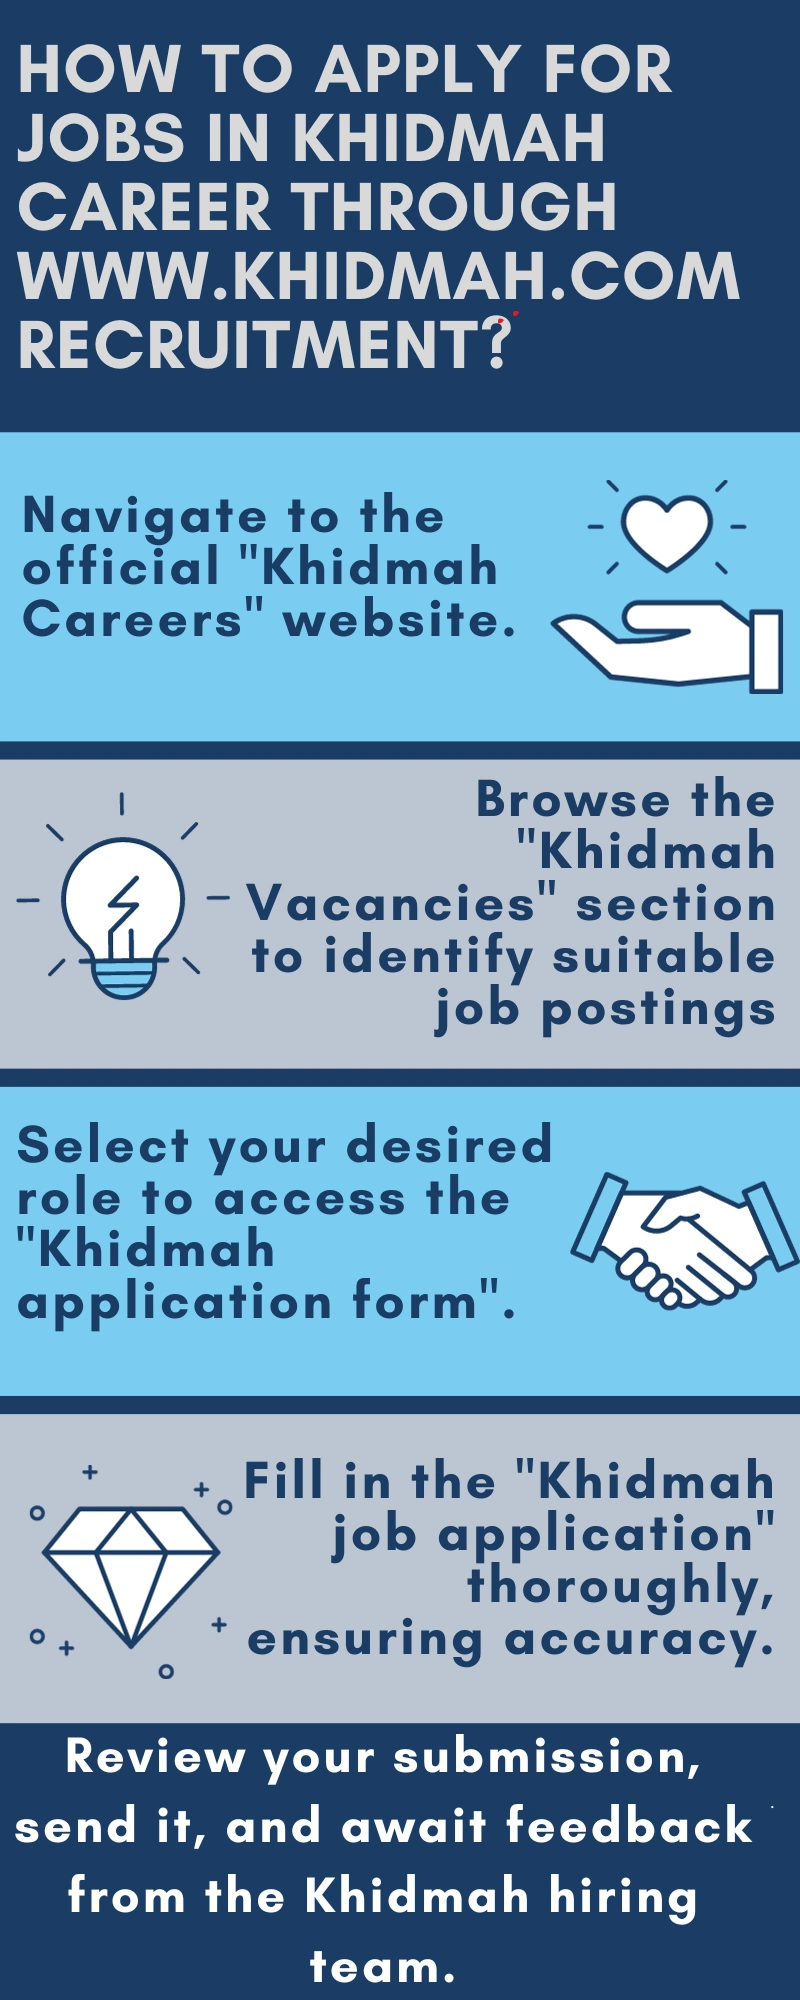 How to Apply for Jobs in Khidmah Career through www.khidmah.com recruitment?